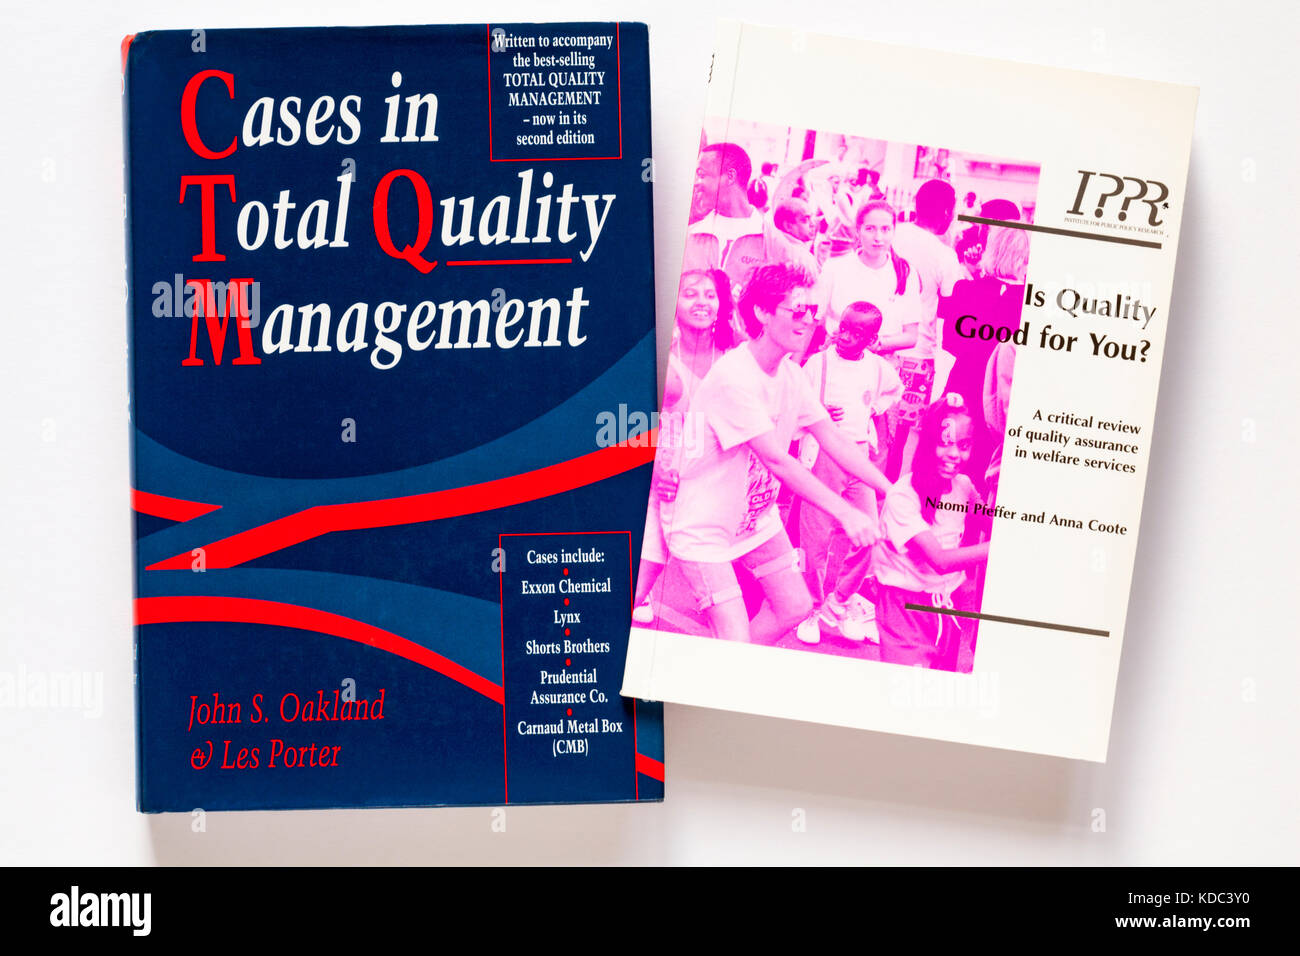 Casi in Gestione totale della qualità e la qualità è buona per voi libri isolati su sfondo bianco Foto Stock